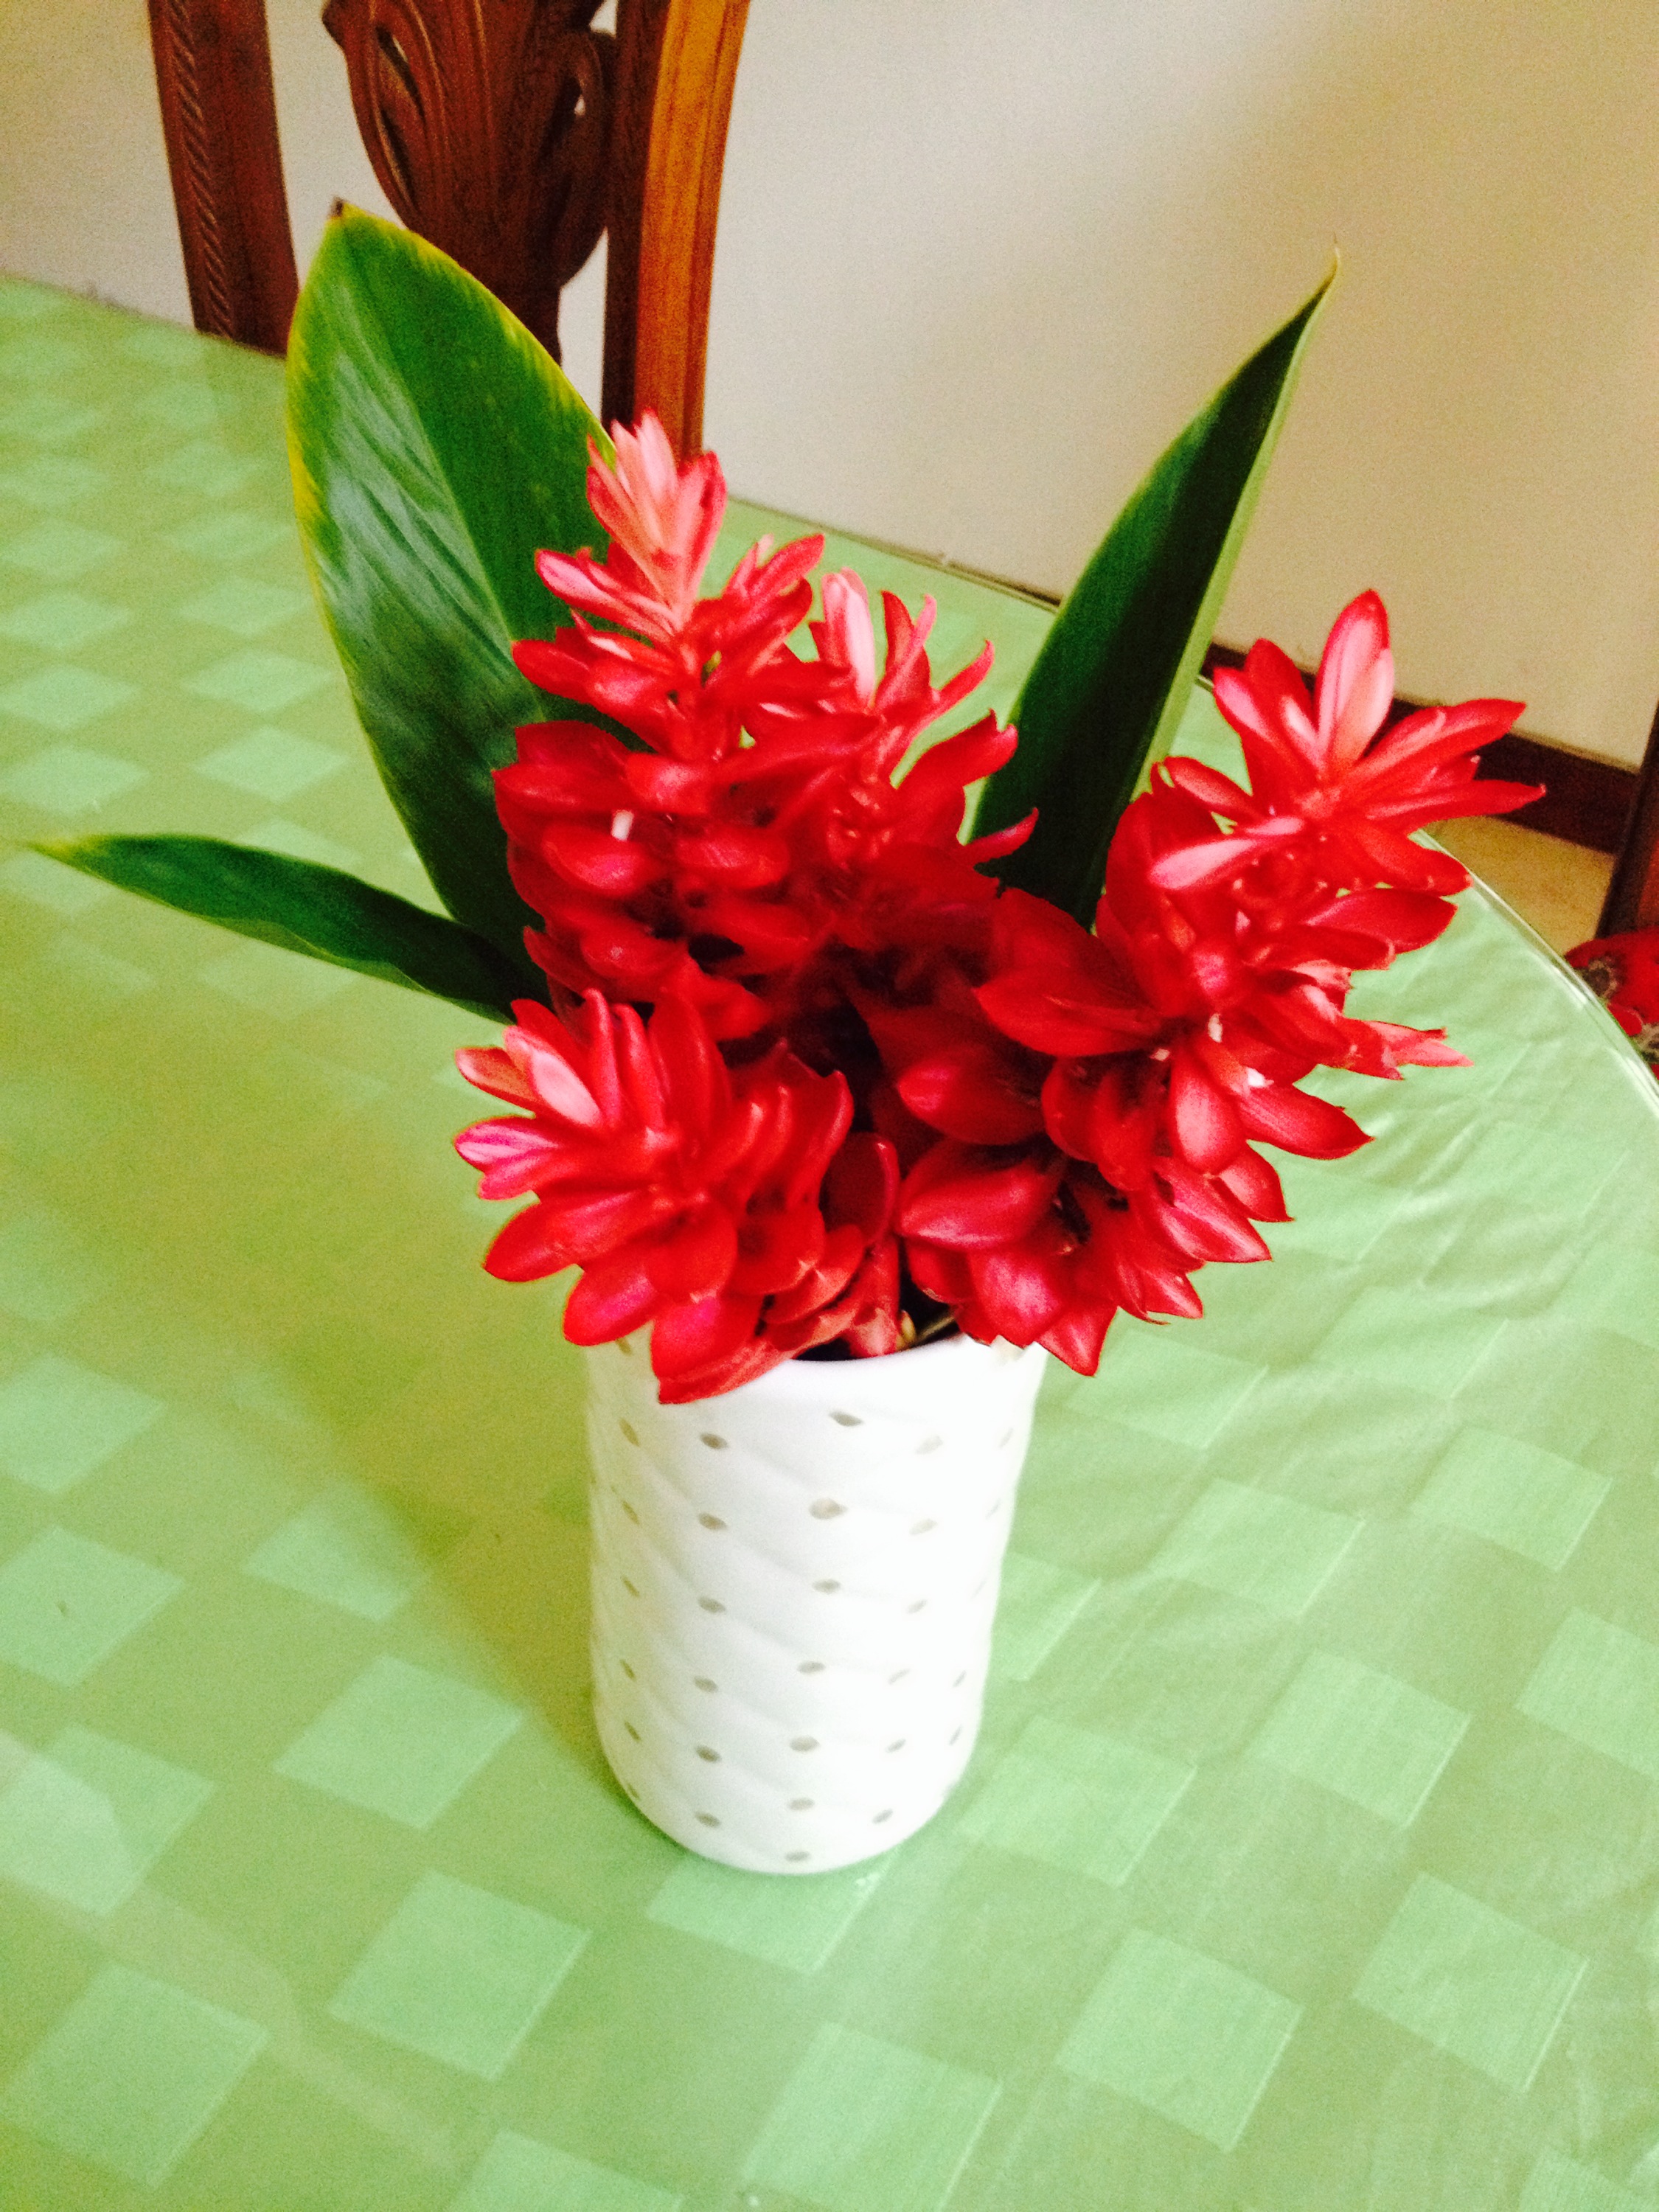  Gambar  bunga  dalam vas  adhyablog